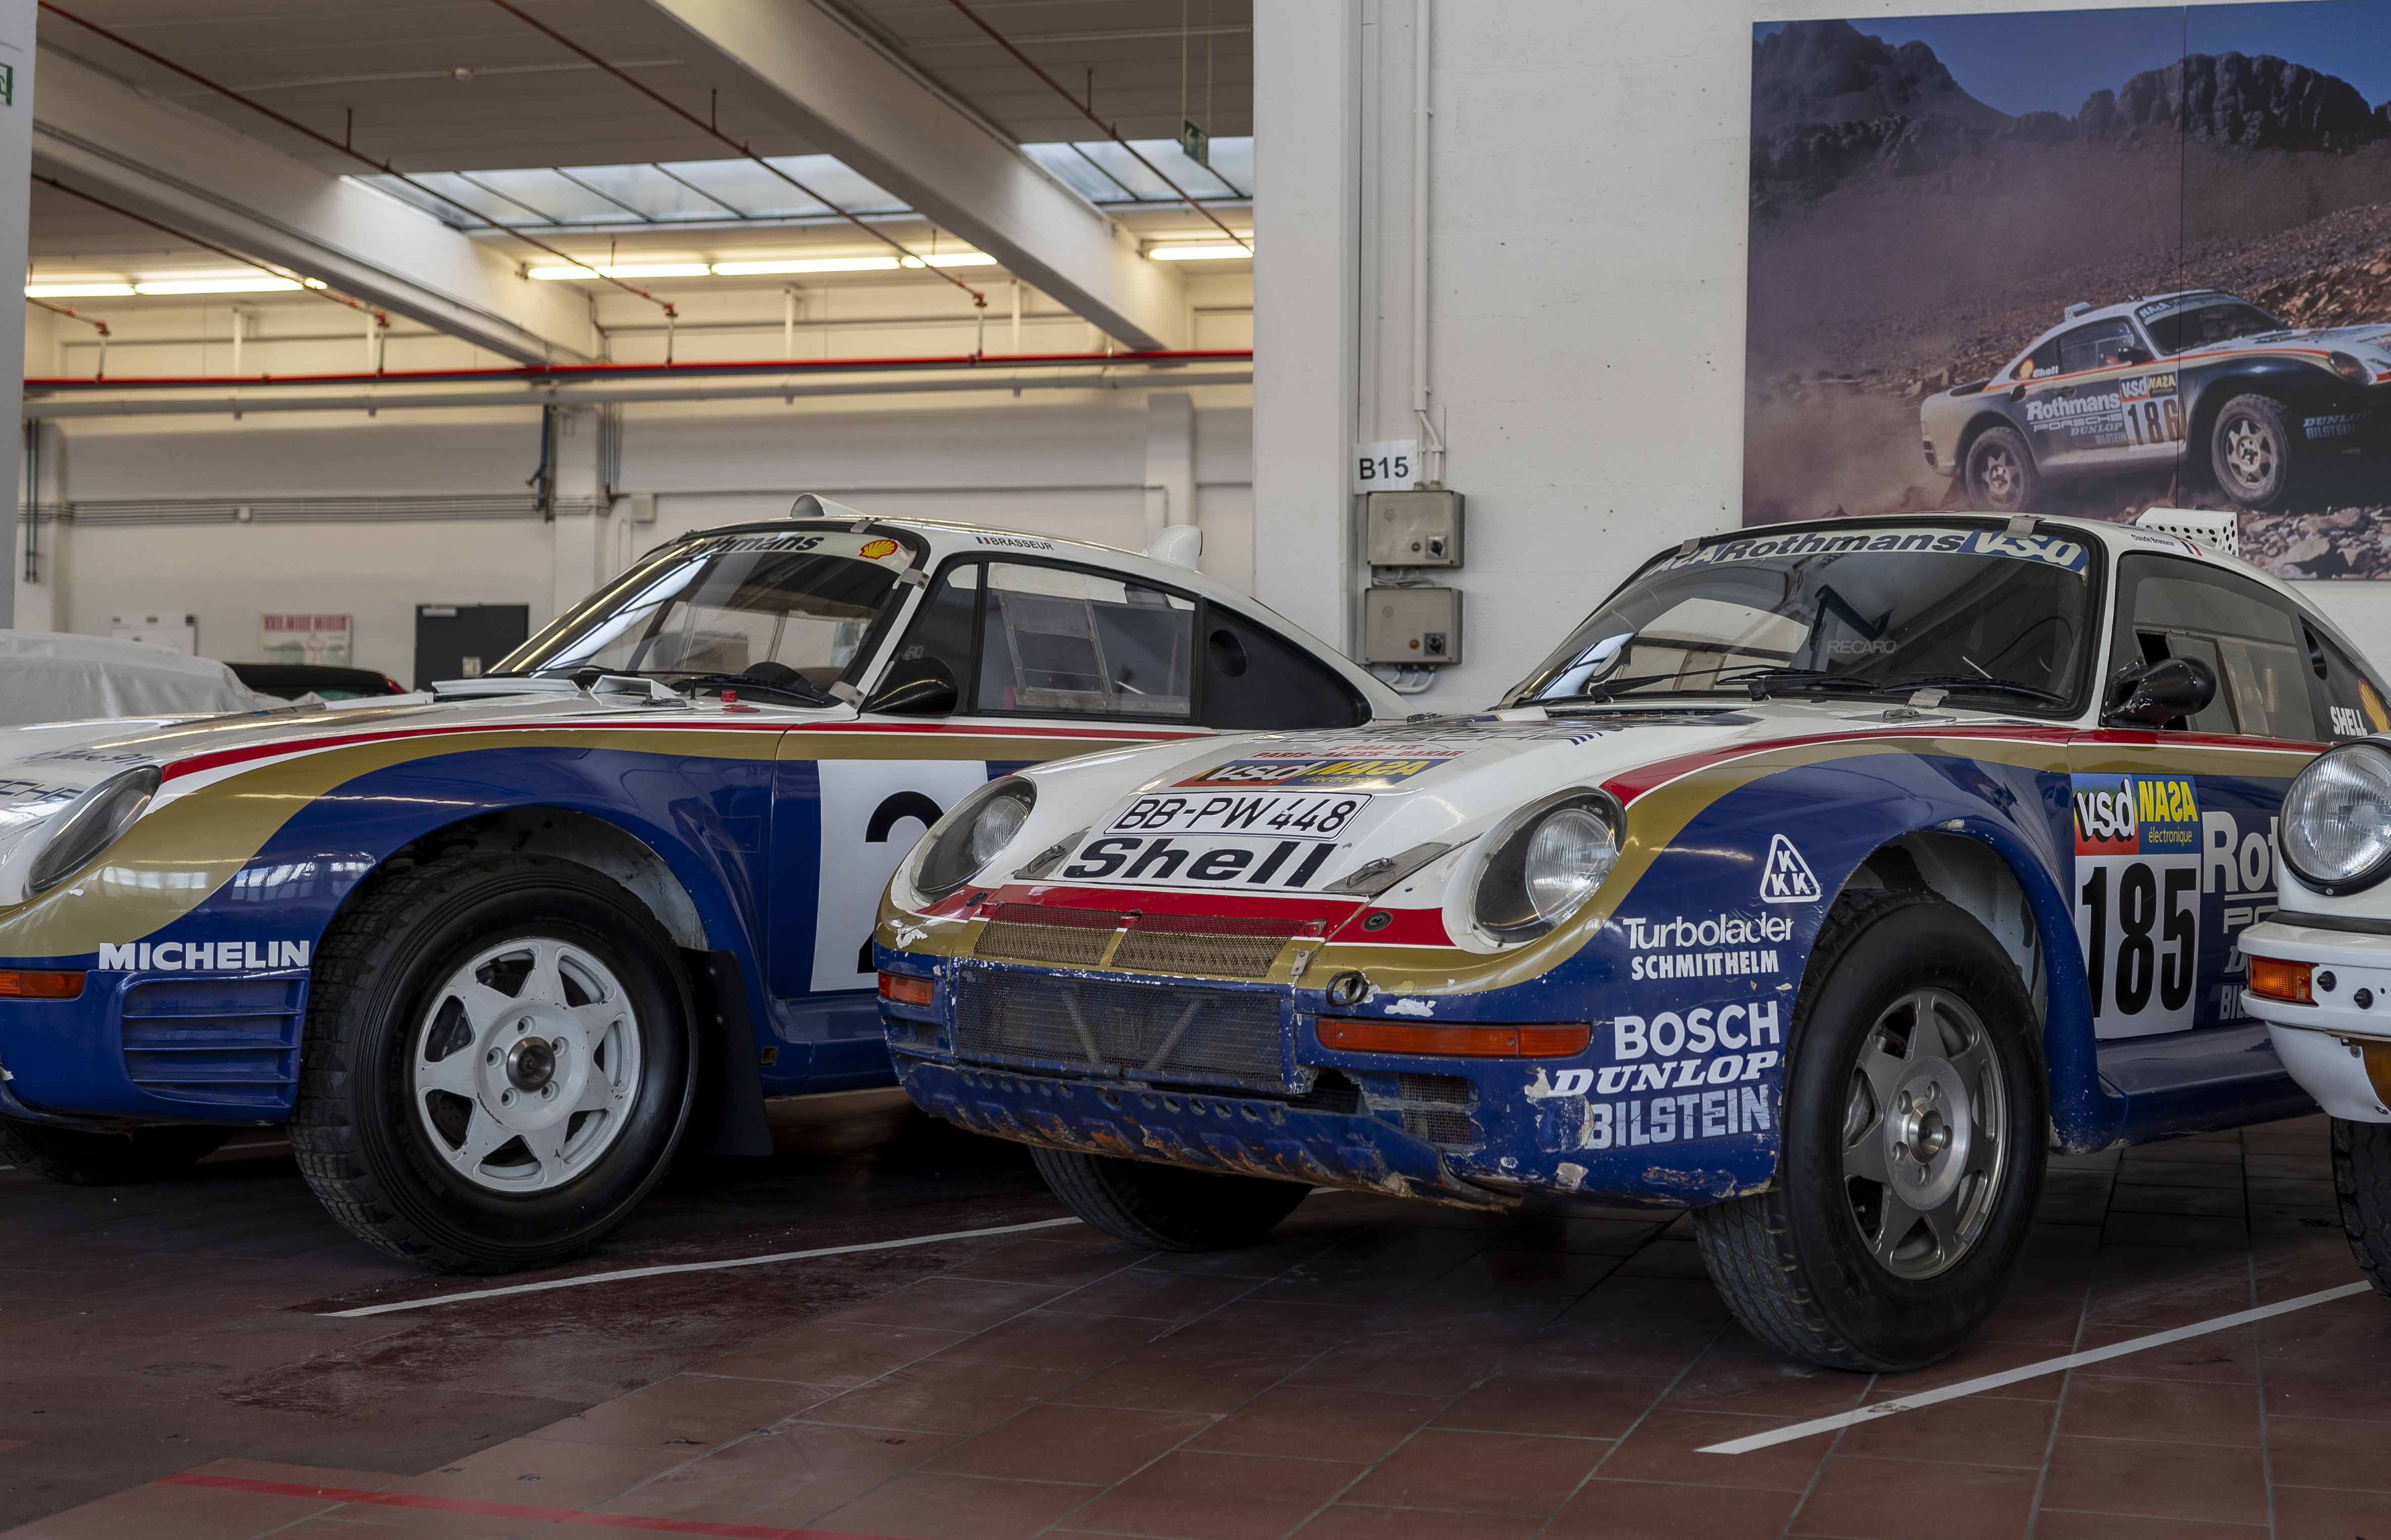 Porsche 959 Paris-Dakar cars at the Porsche Museum